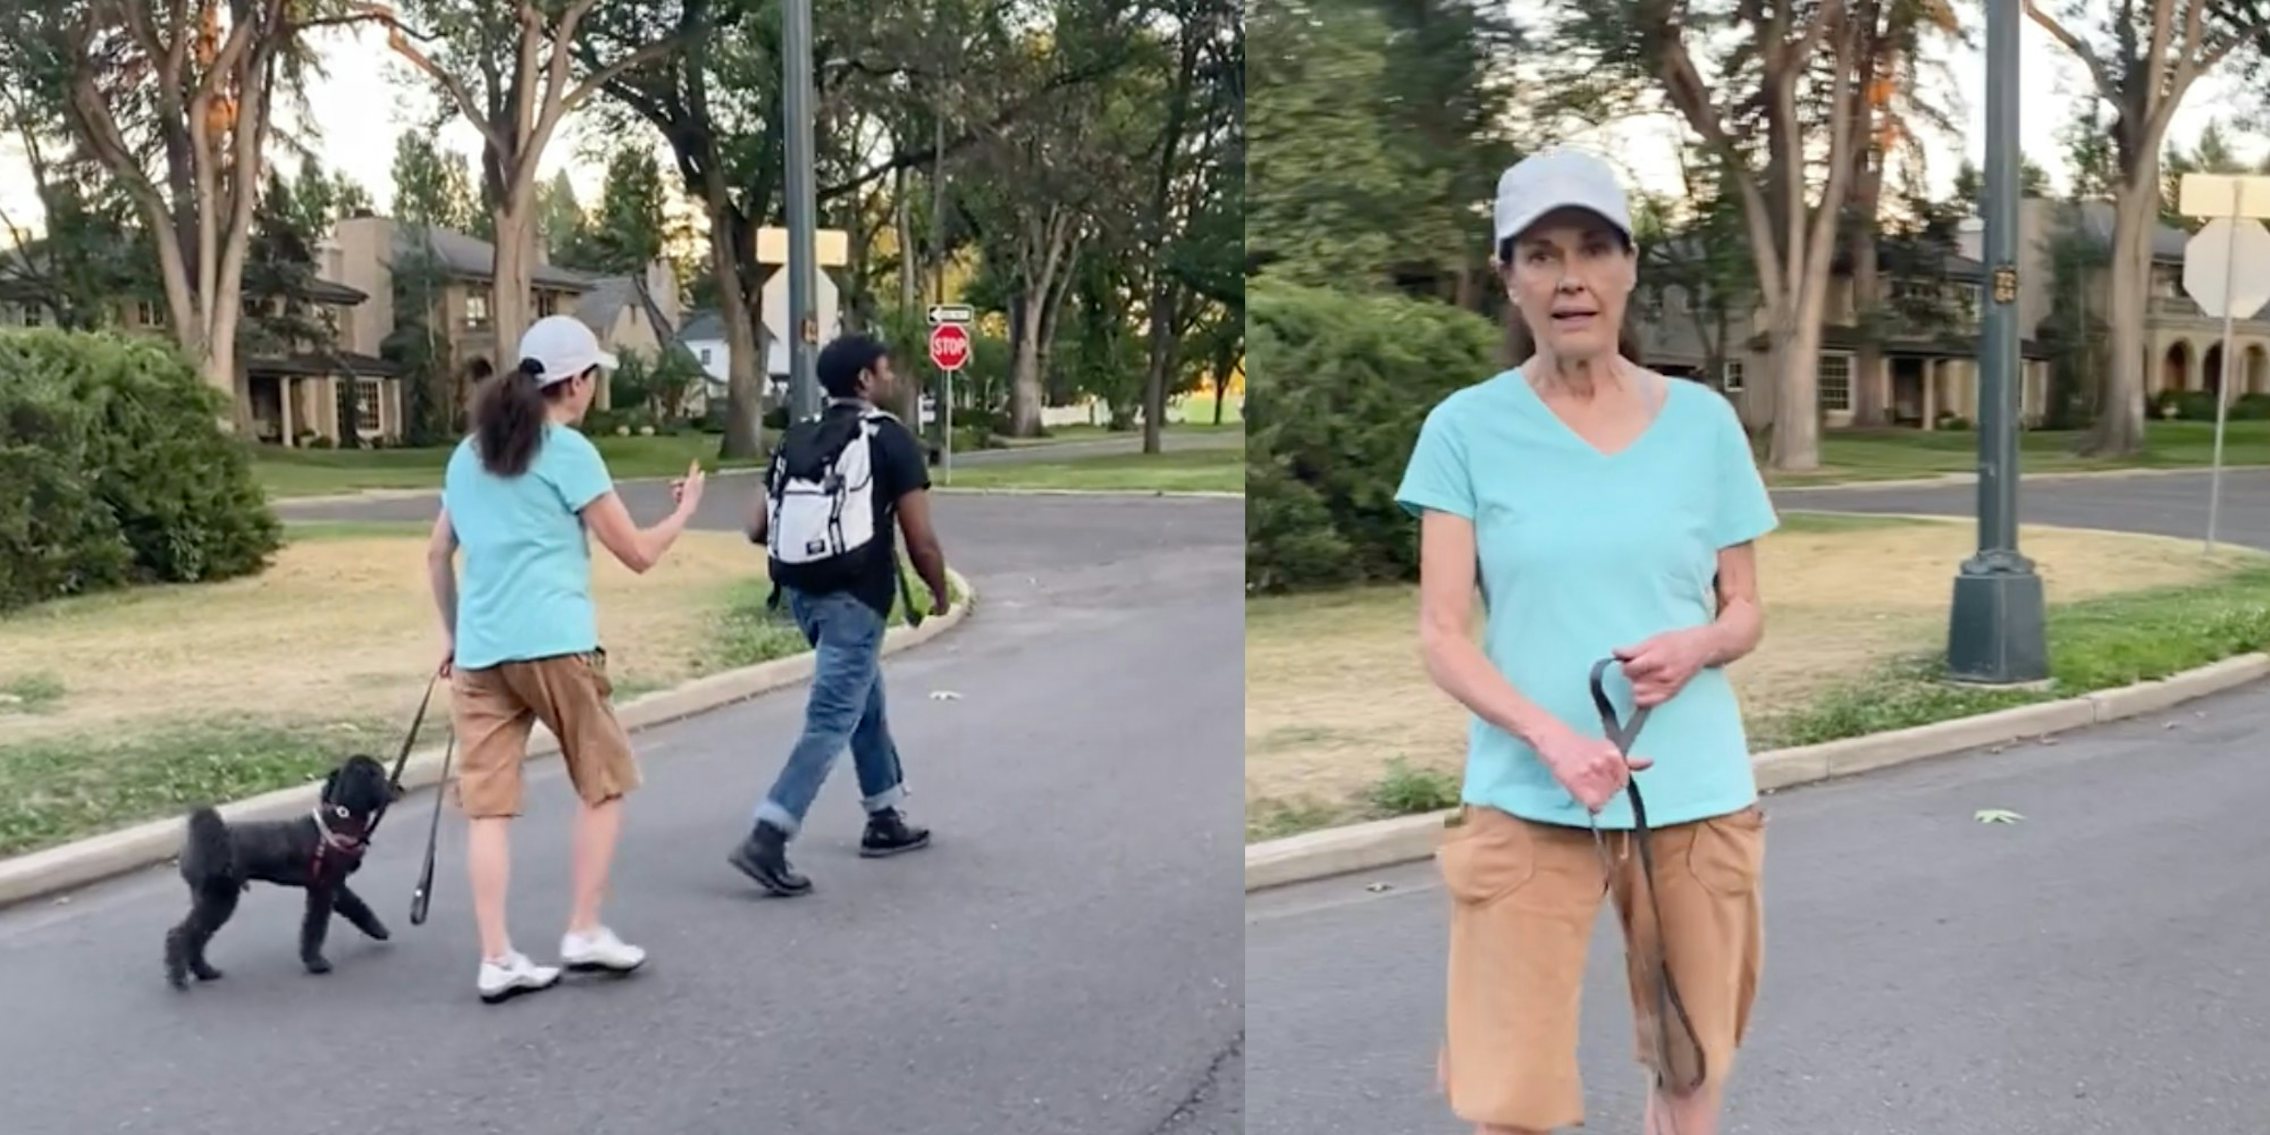 Denver woman seen following a Black man